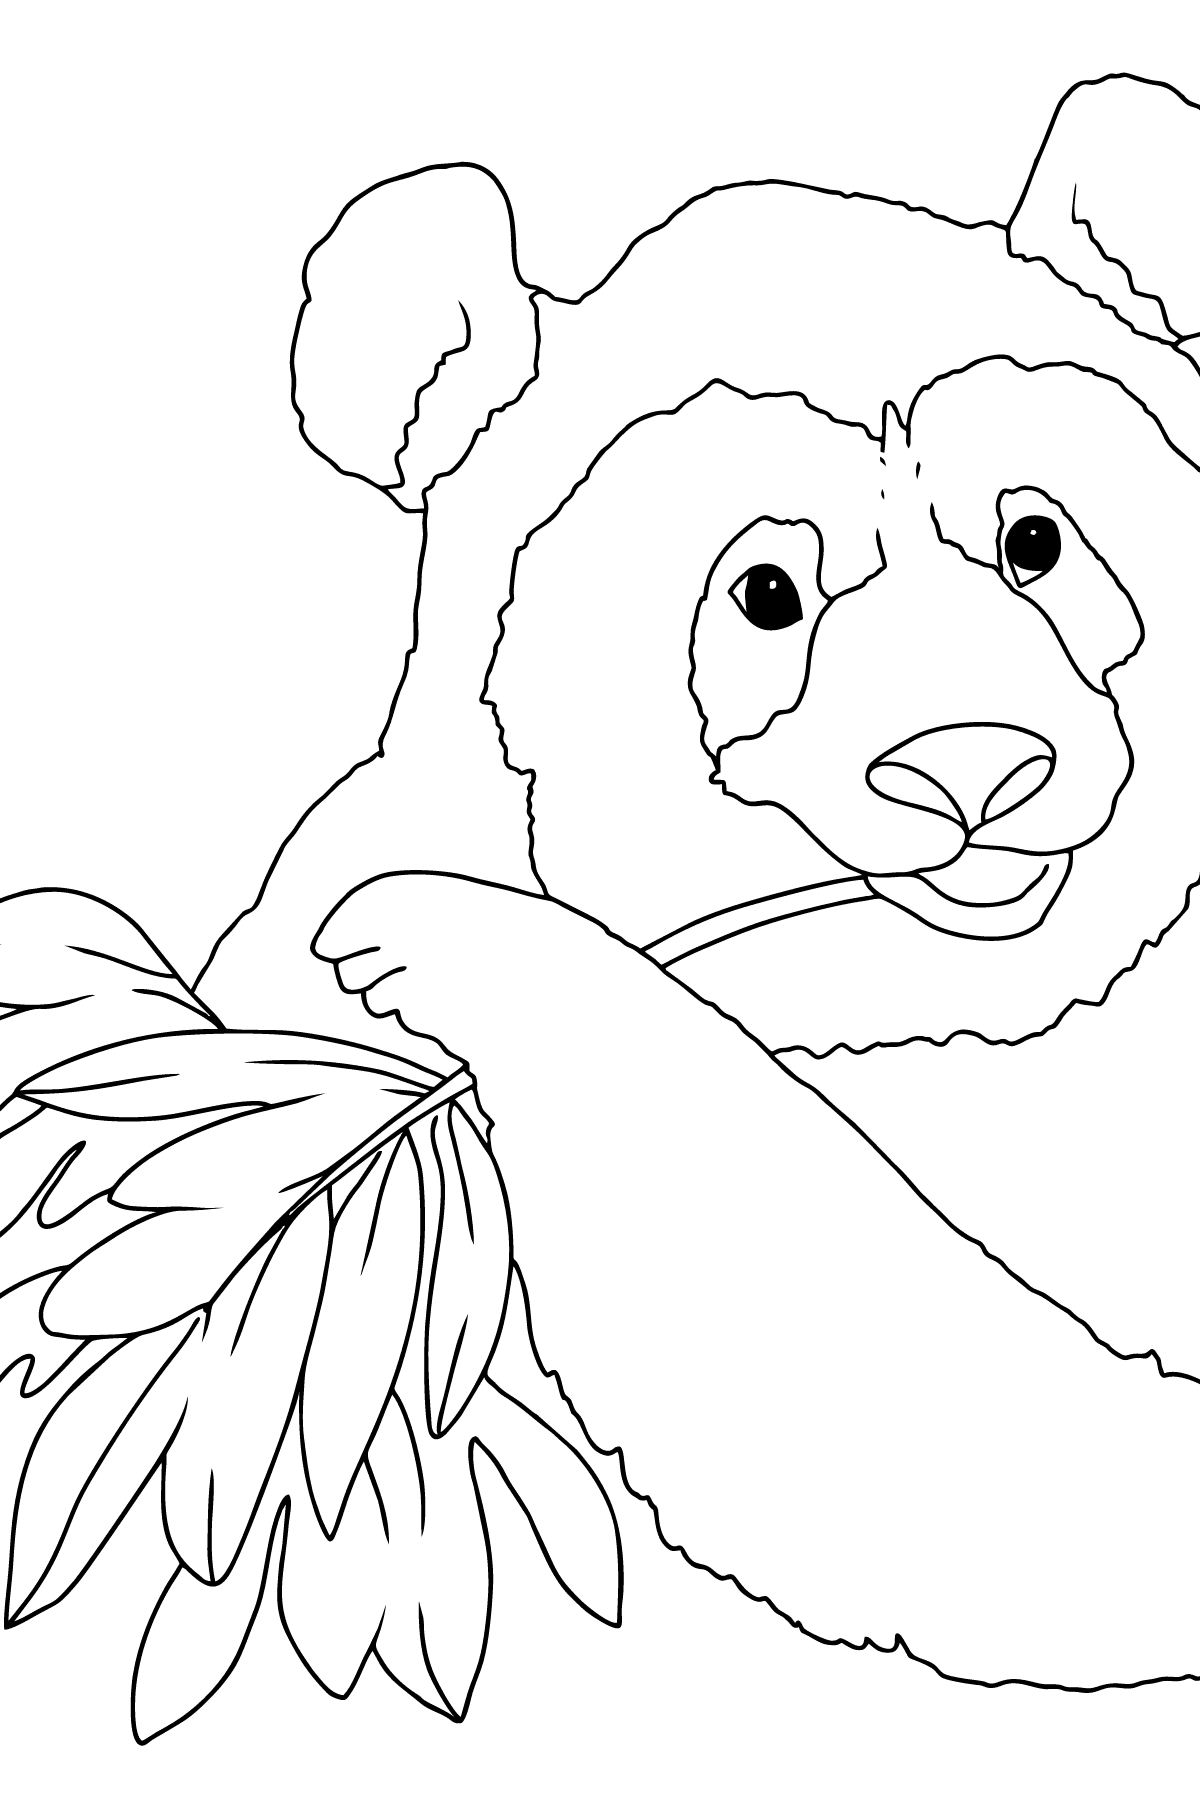 Dibujo para Colorear - Un Panda Comiendo Hojas de Bambú - Colorear para Niños